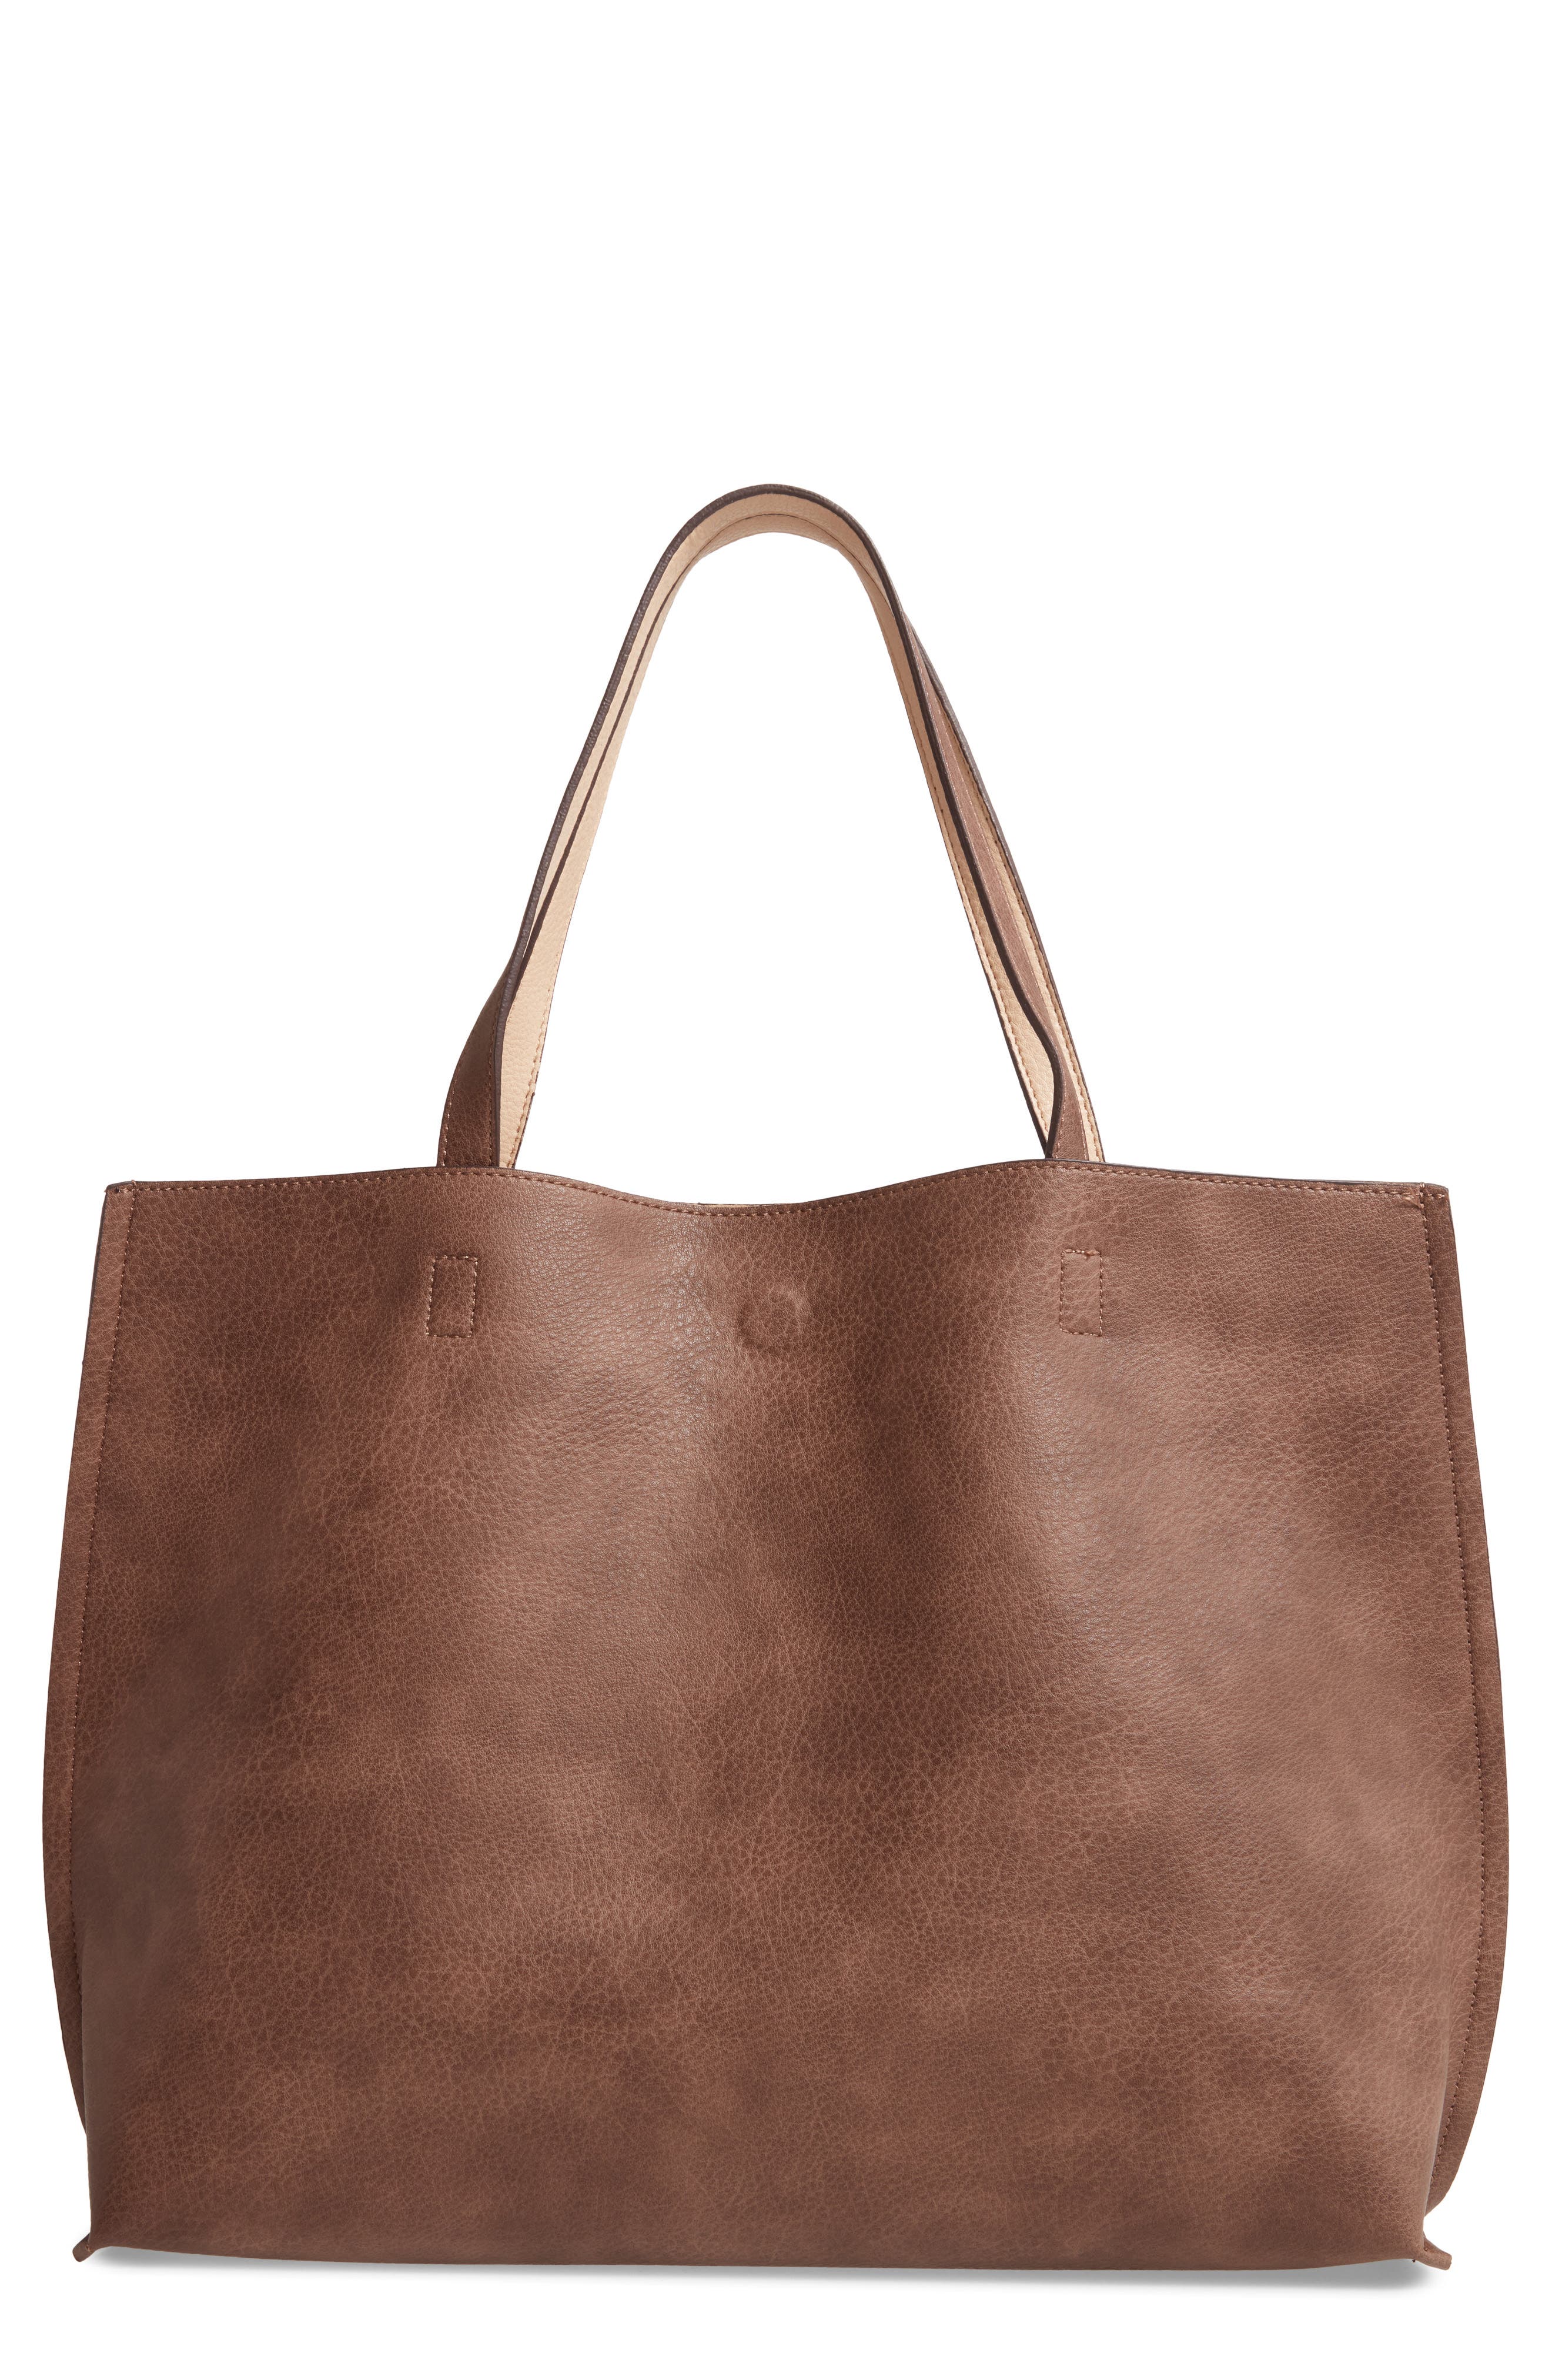 Leather tote bag large size,dark cabernet color